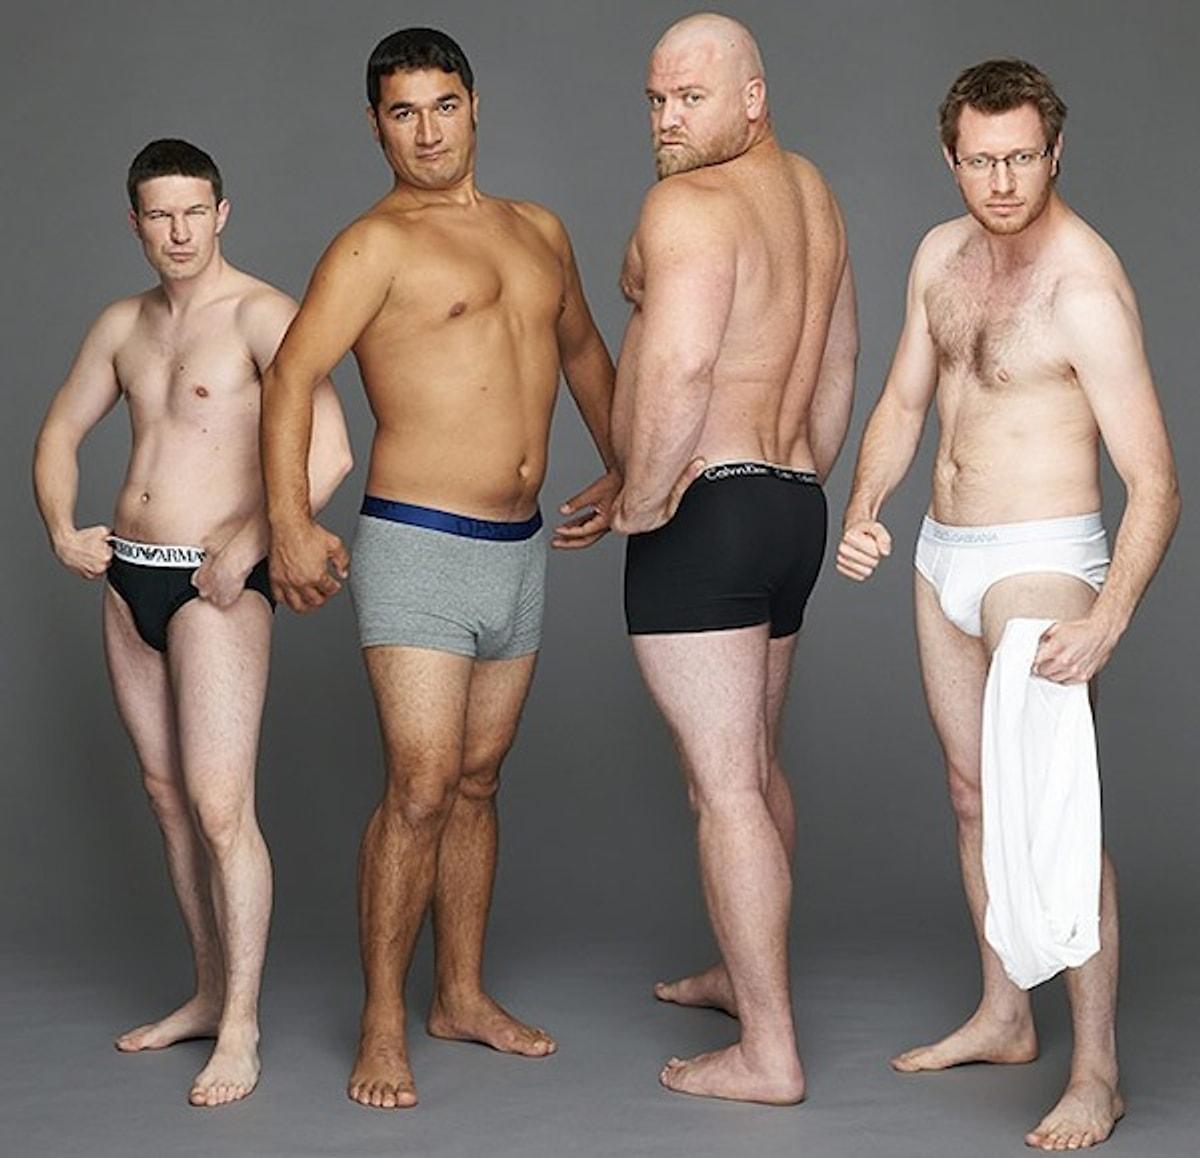 У мужчины 5 см. Обычнаёяё фигурёа мужчинёы. Разные фигуры мужчин. Мужчины разной комплекции. Мужское тело обычное.